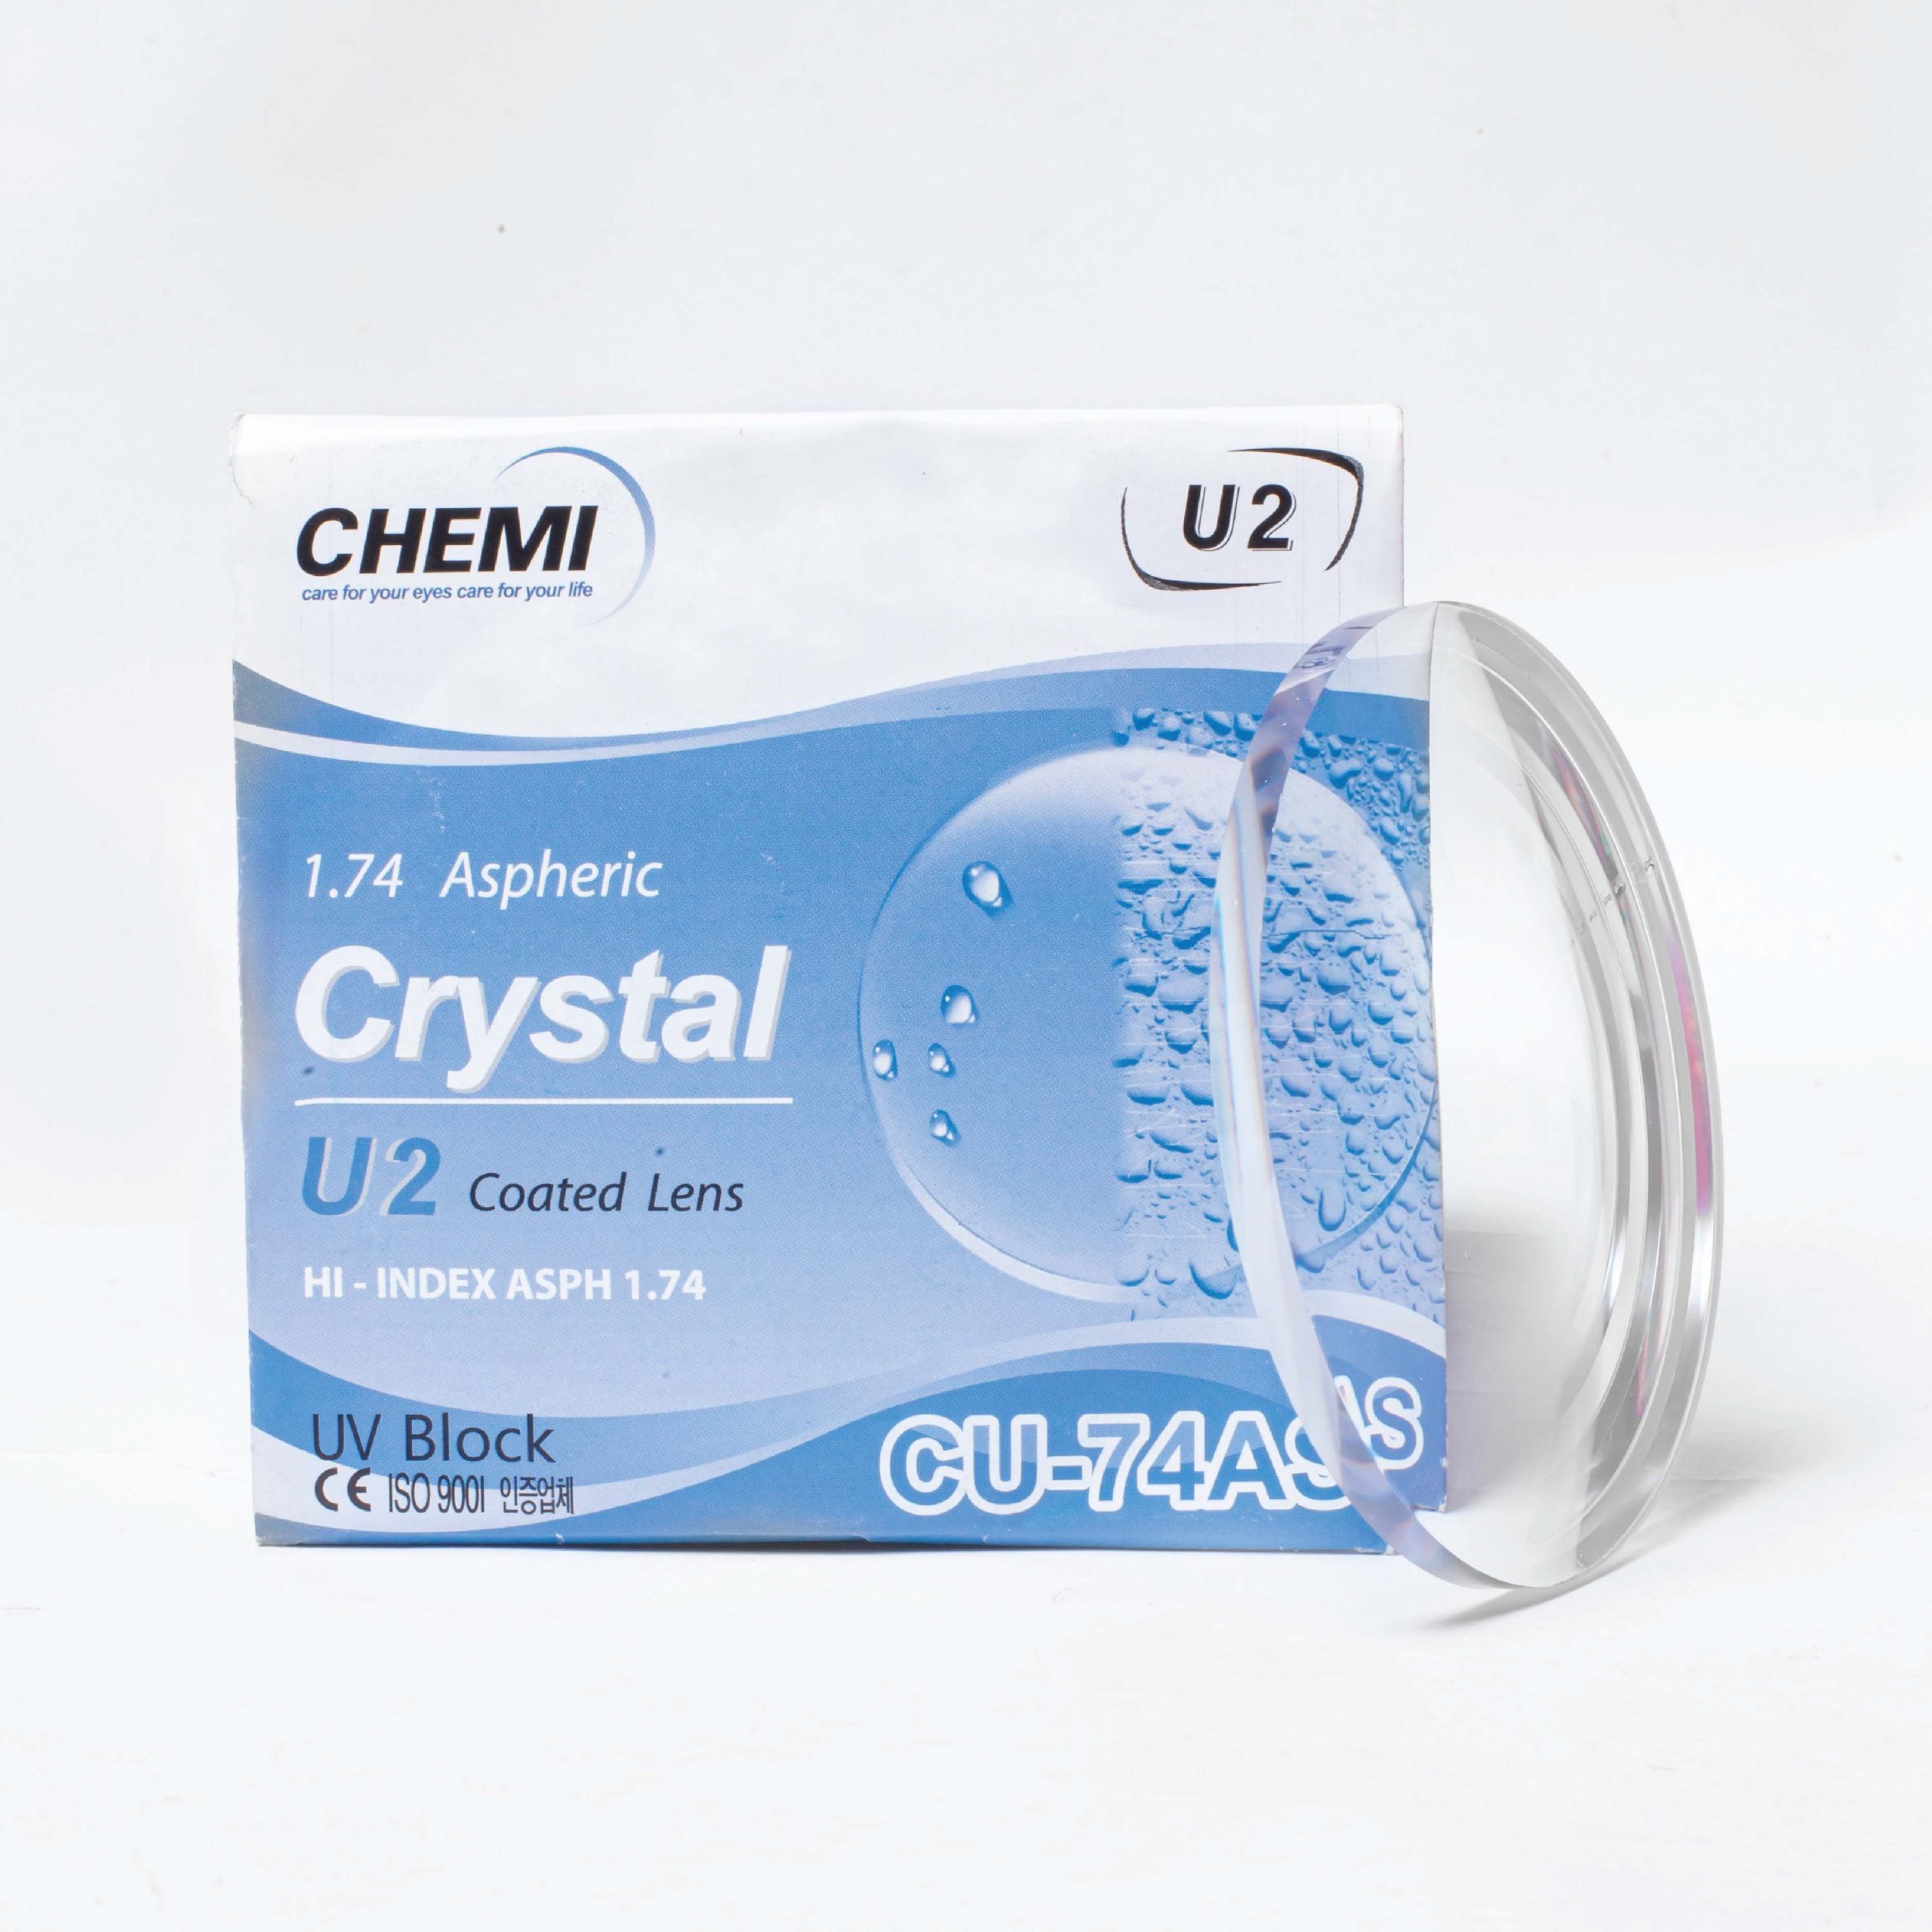 CHEMI U2 Crystal 1.74 ASP